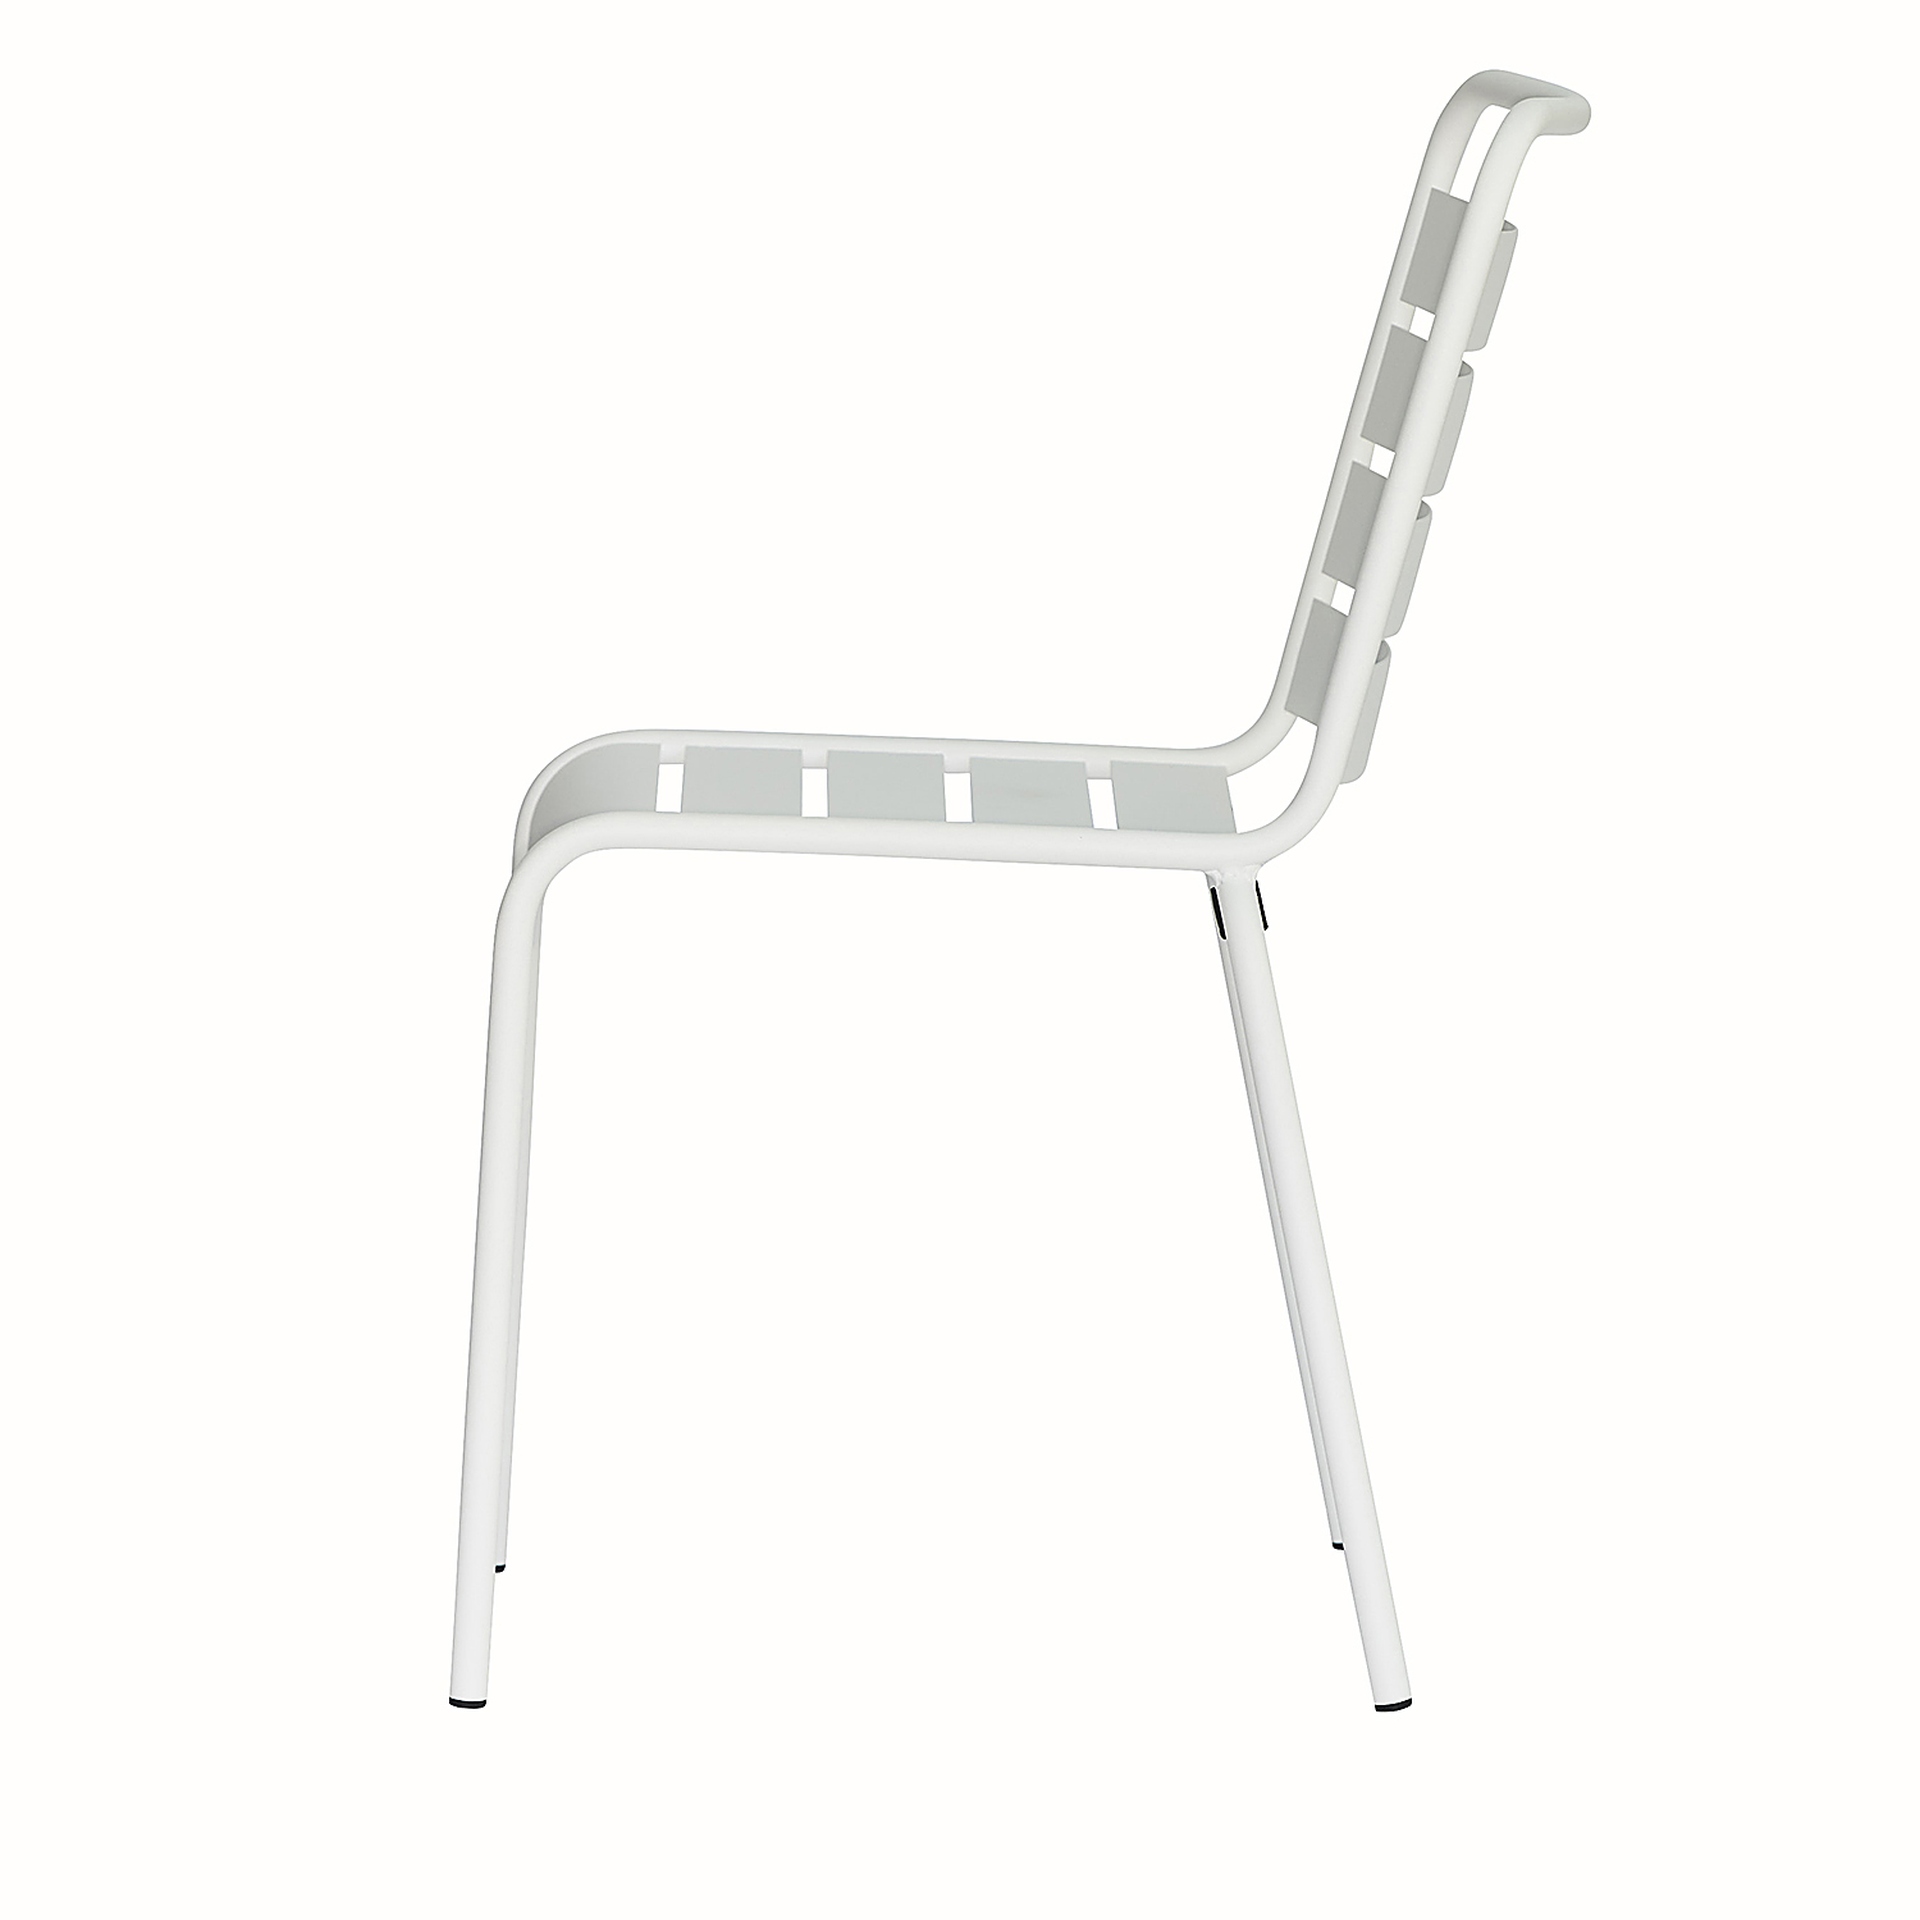 Der moderne Stapelstuhl Mya wurde aus Aluminium gefertigt und hat einen weißen Farbton. Designet wurde der Stuhl von der Marke Jan Kurtz.